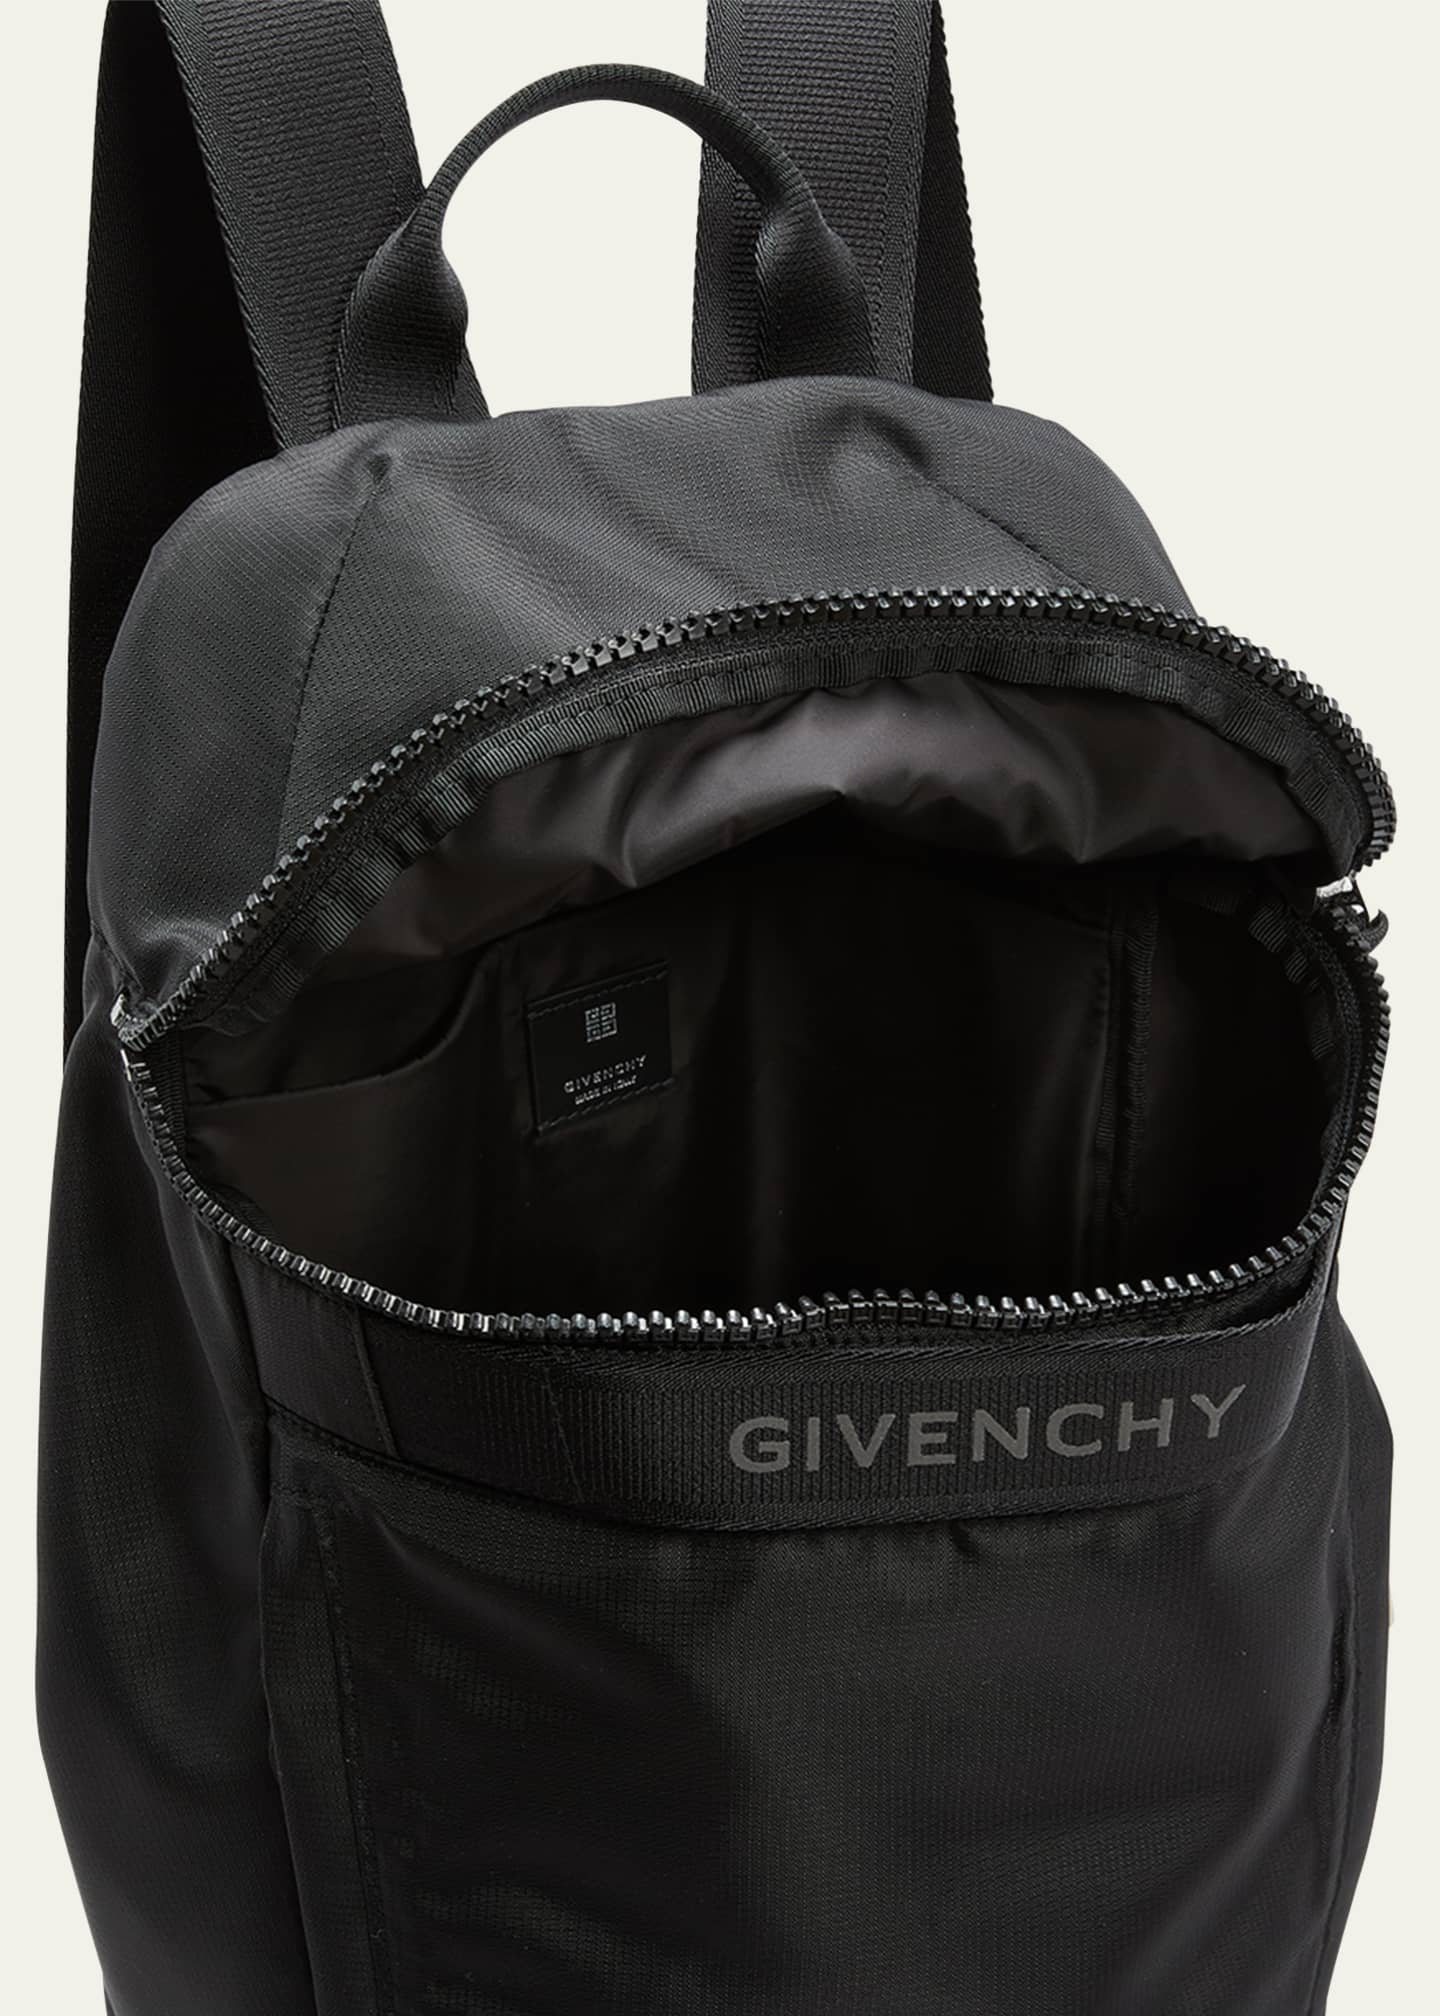 Givenchy Men's G-Trek Nylon Backpack - Bergdorf Goodman